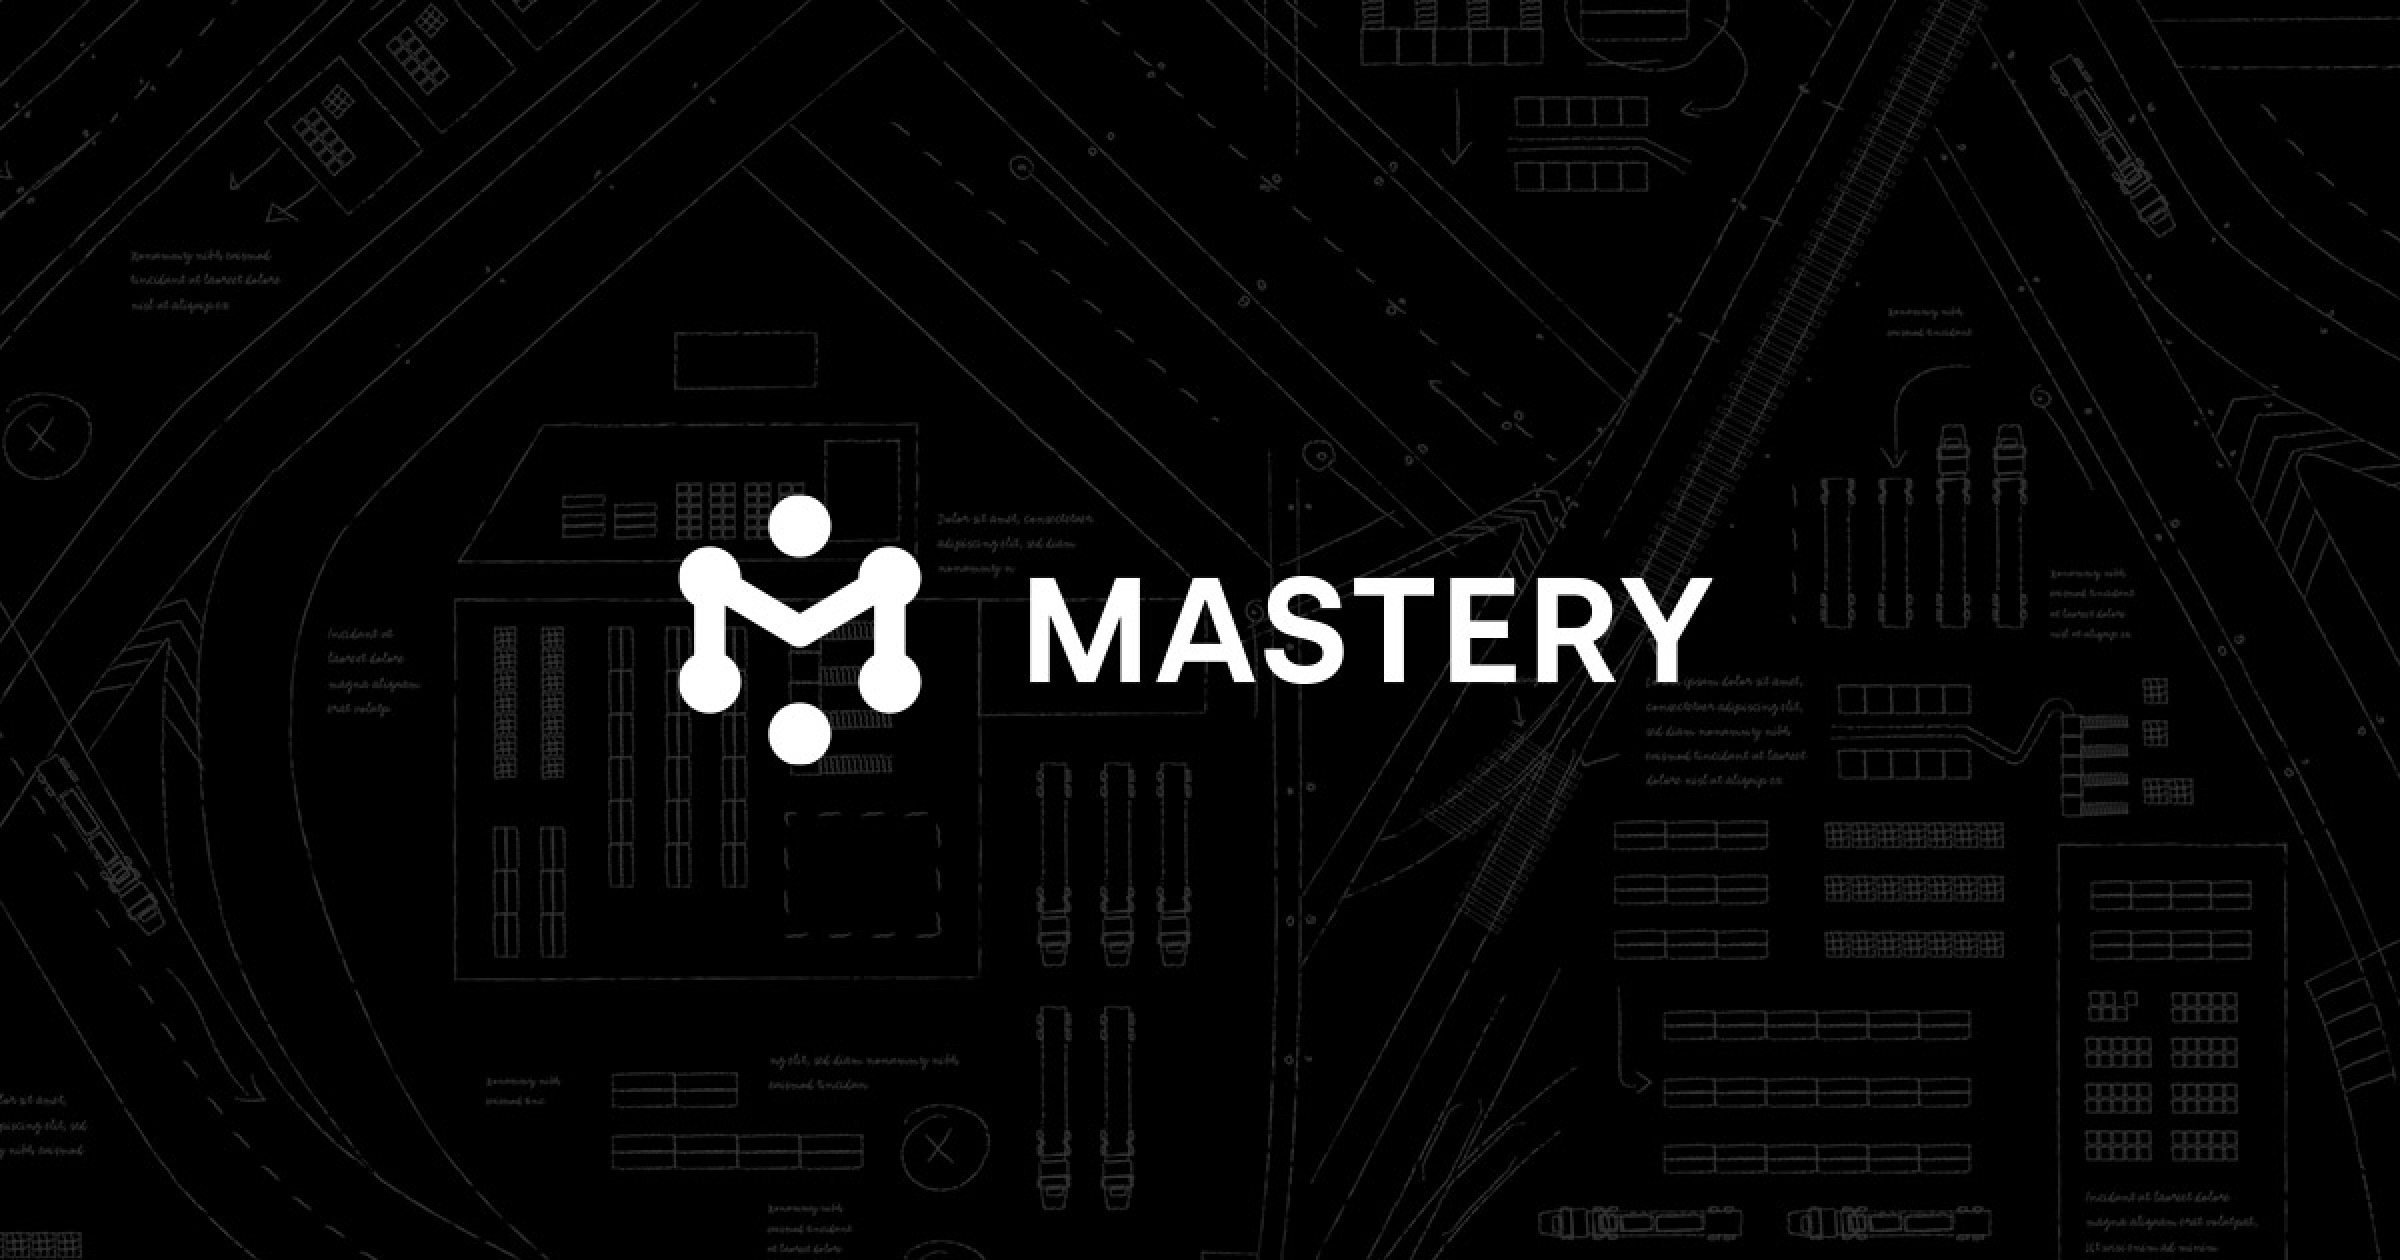 Mastery Logistics System - Mastery